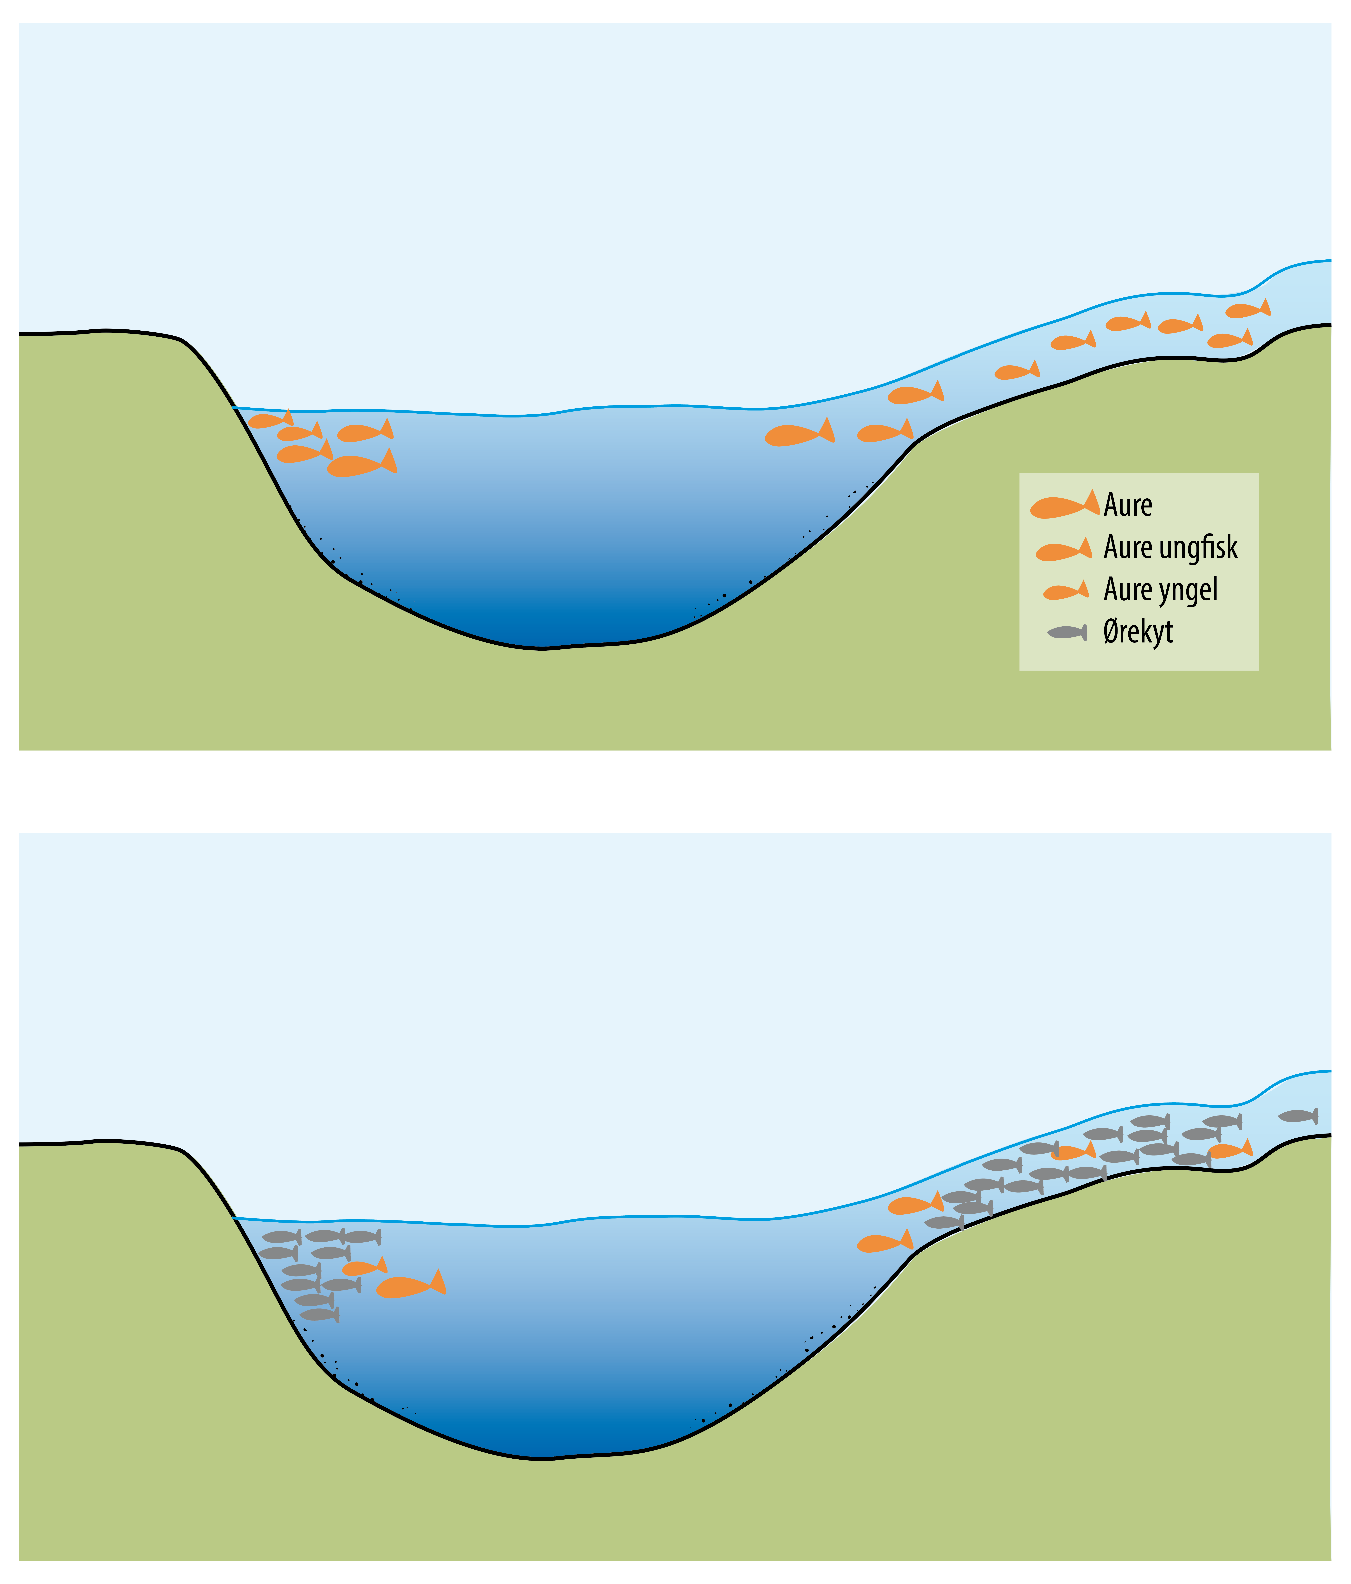 Figur 4. Skjematisk framstilling av utviklingen i et aurevatn når ørekyta etablerer seg.